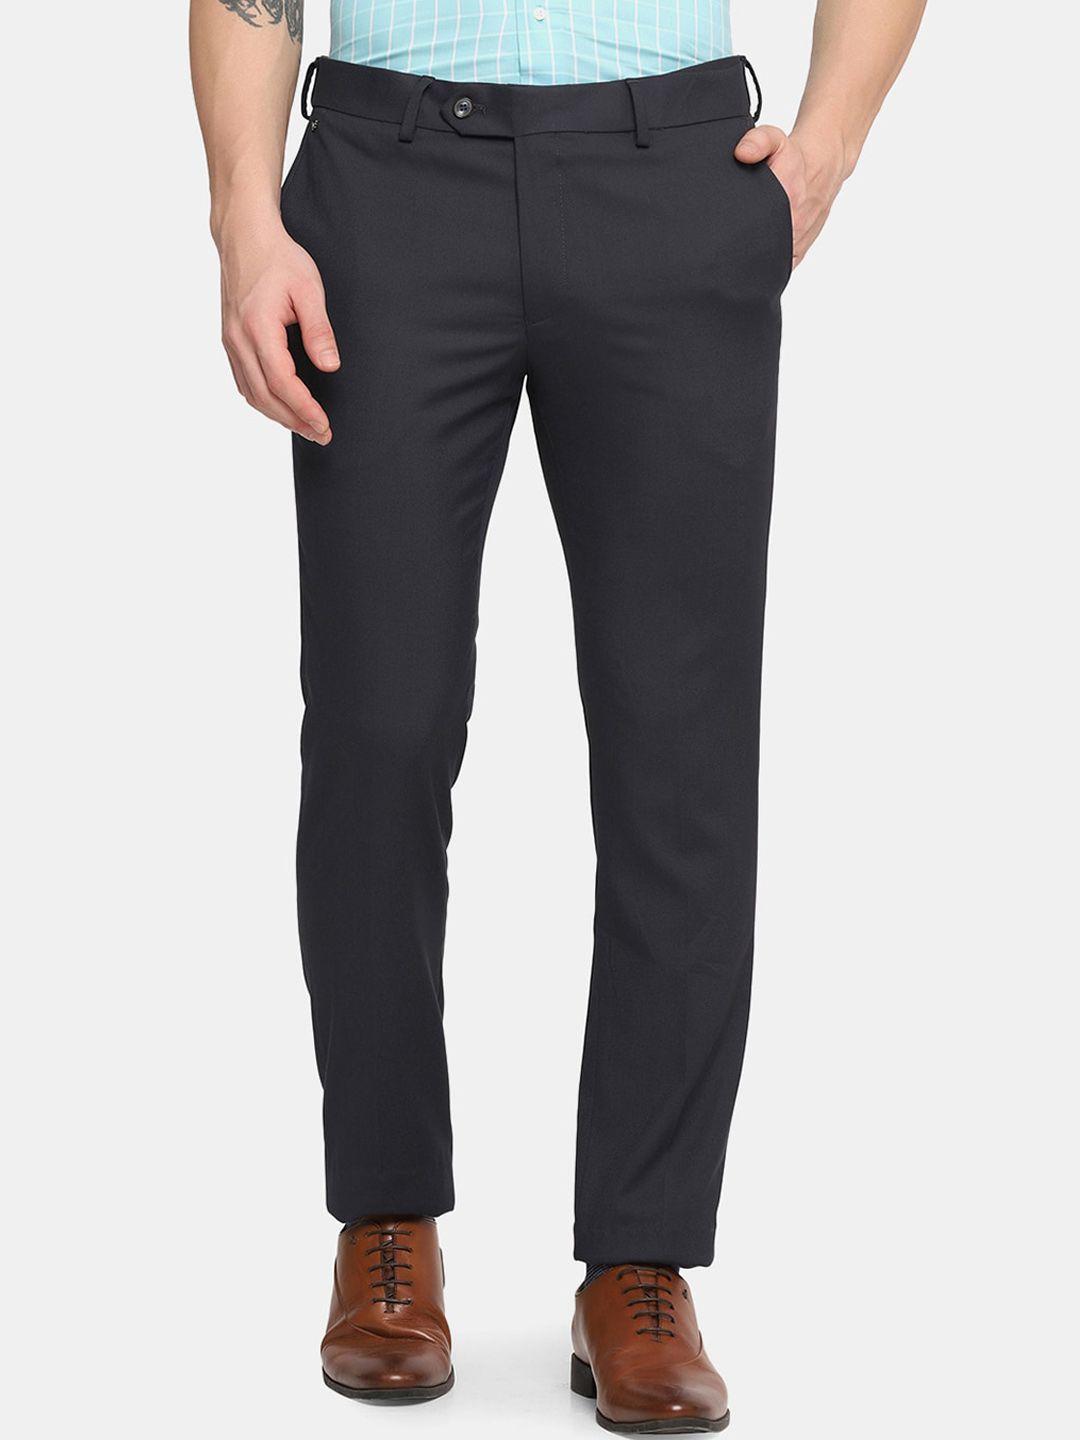 blackberrys-men-grey-skinny-fit-trousers